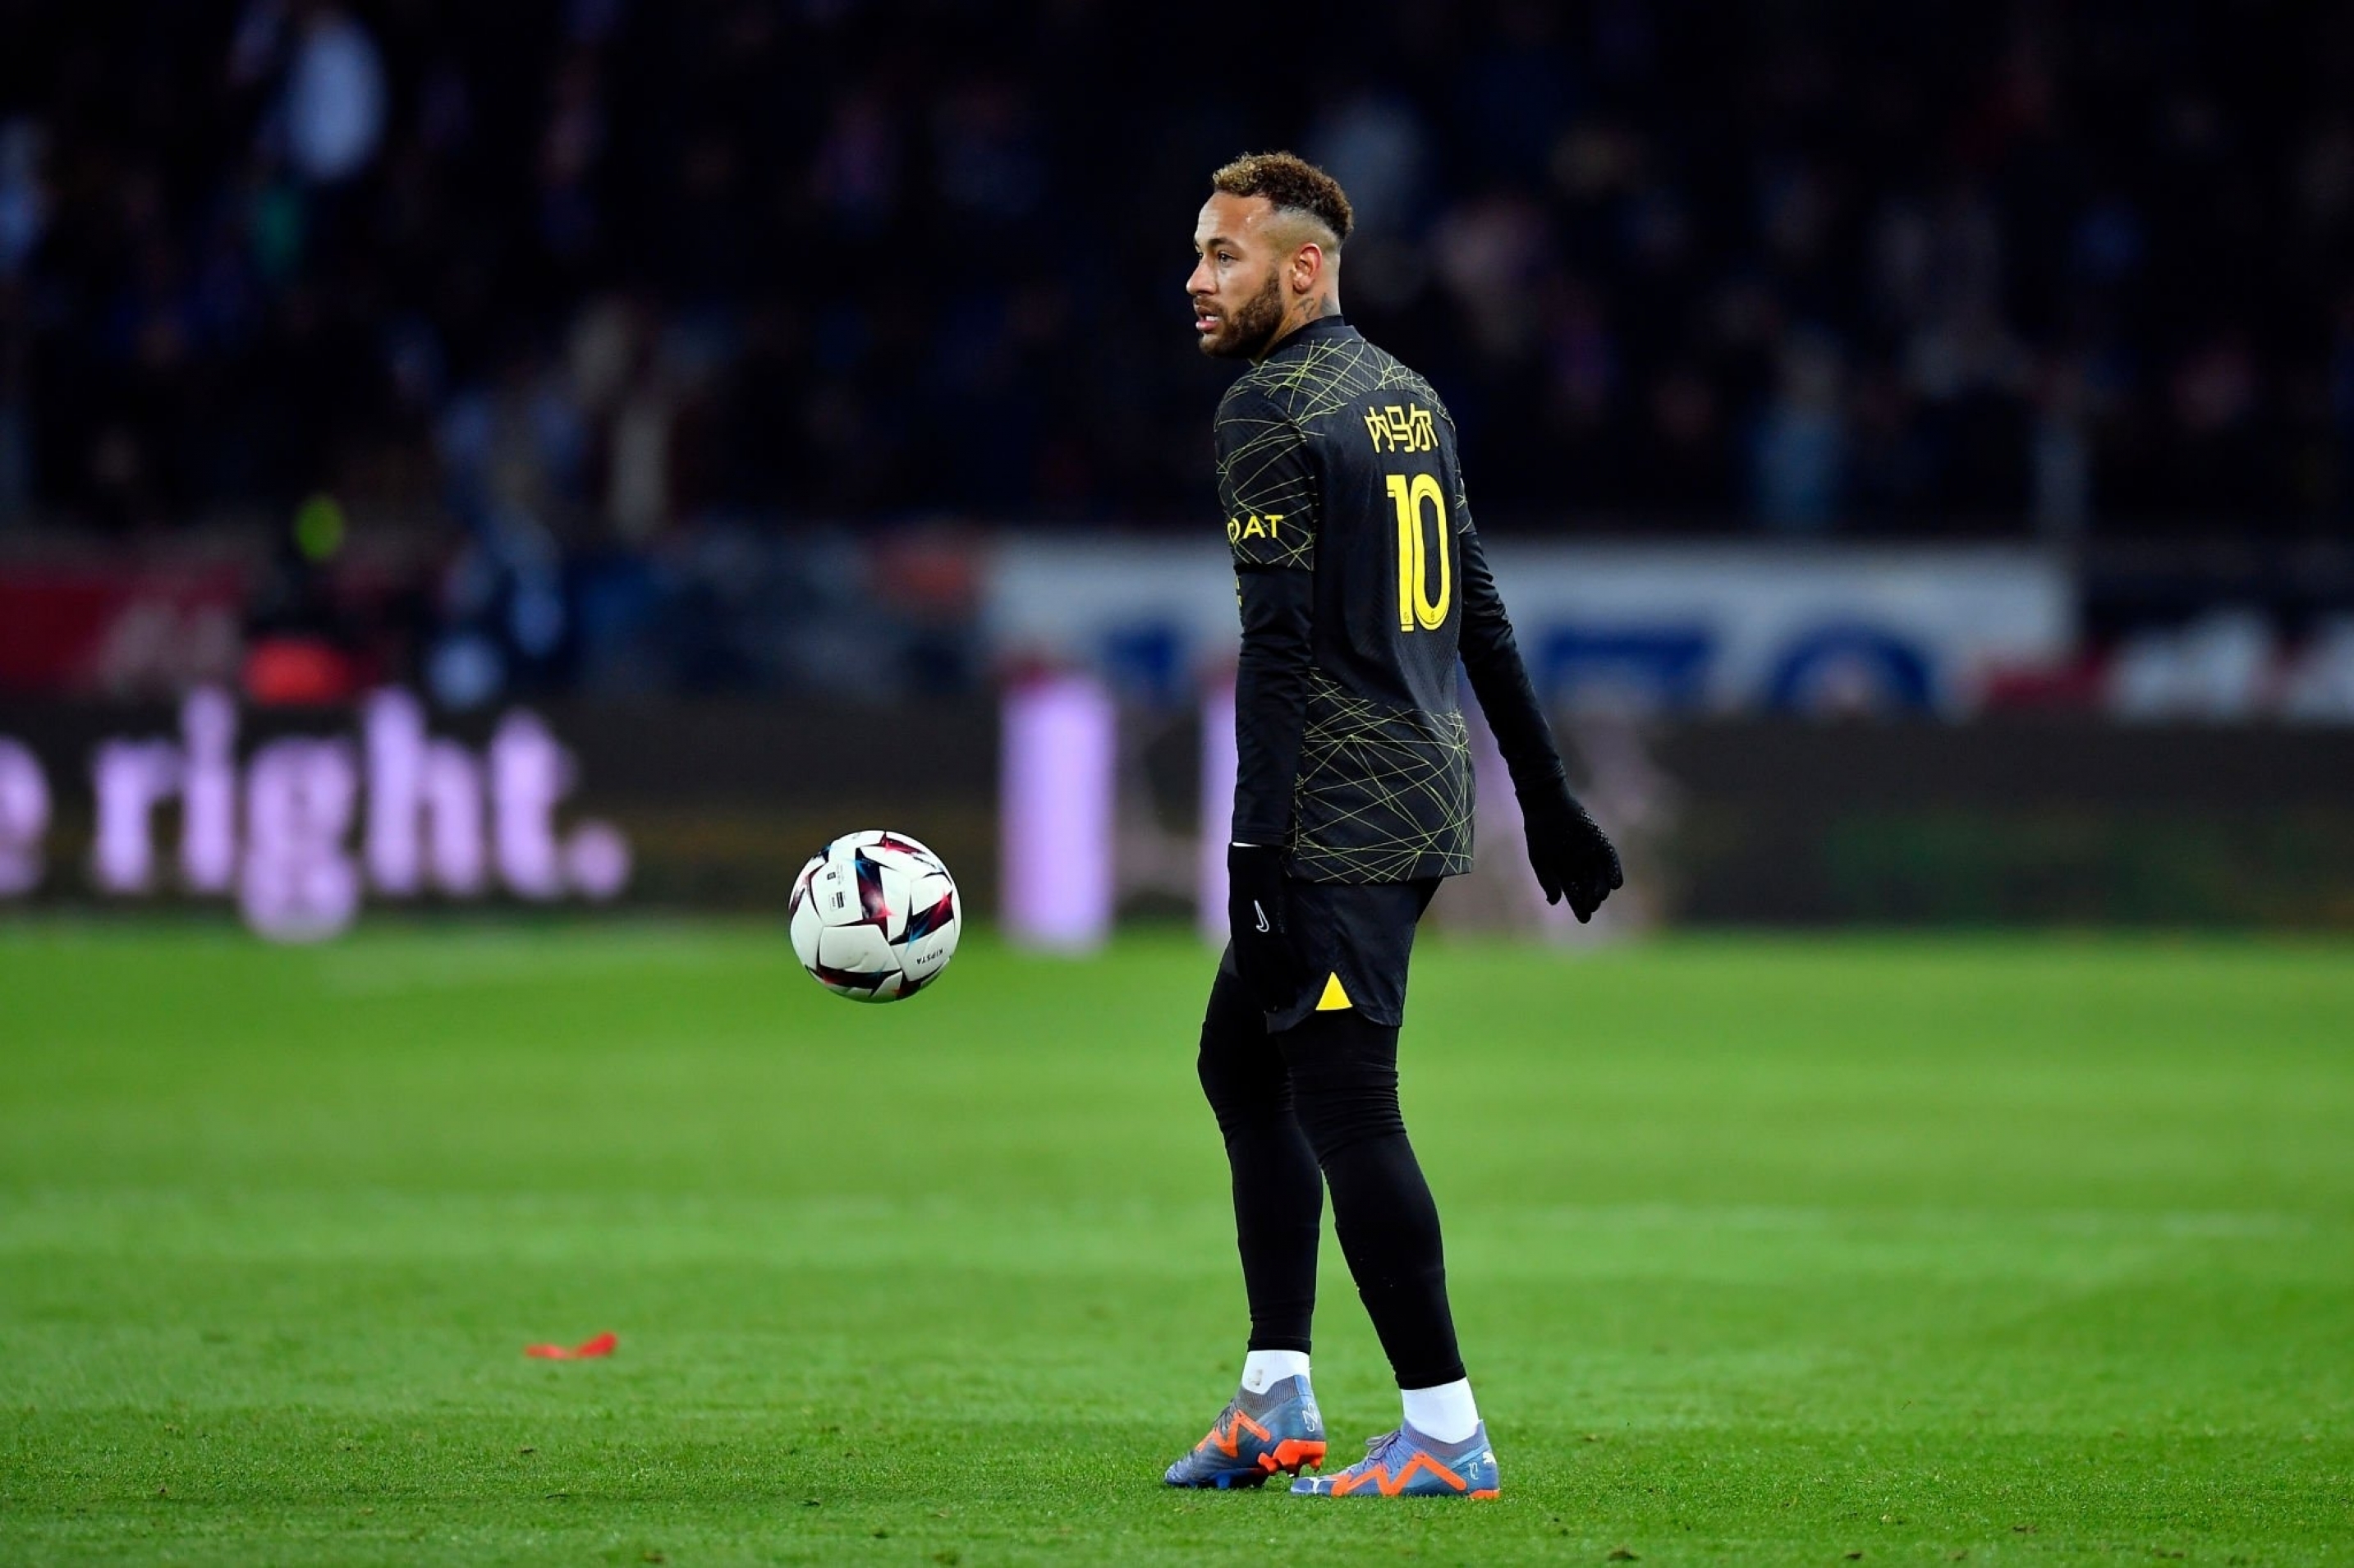 Masalah cedera lain untuk Neymar, akan melewatkan perjalanan Montpellier